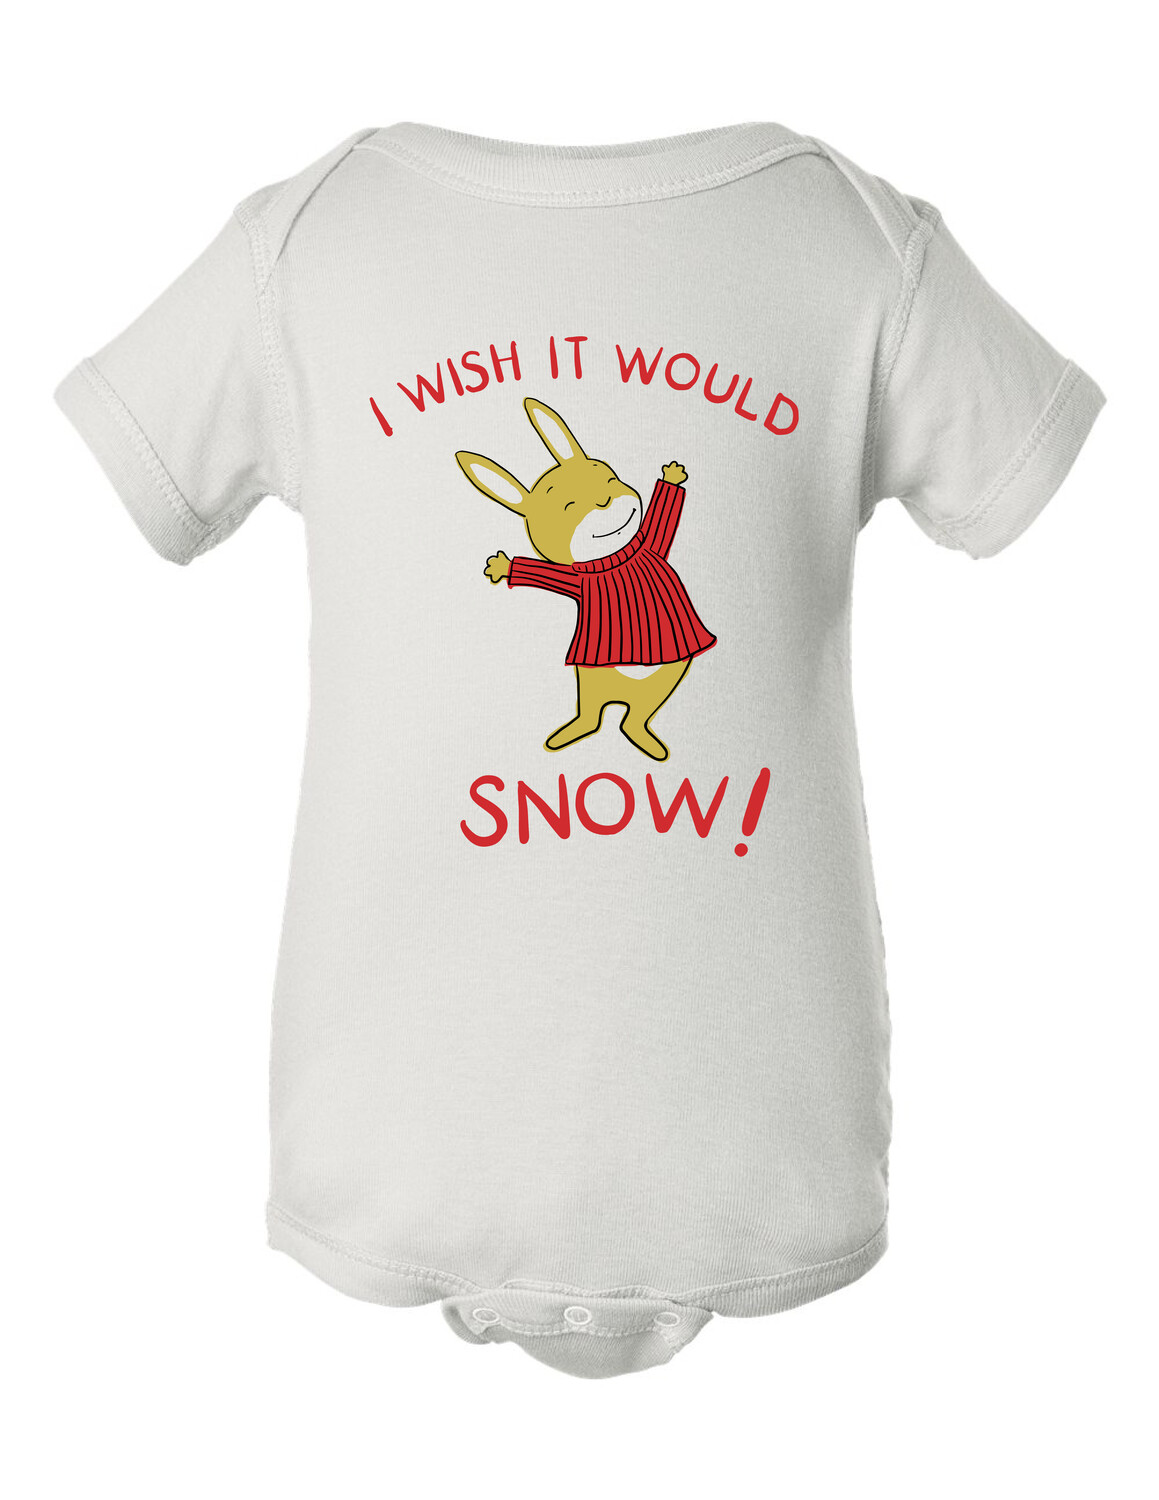 I Wish it Would Snow Onesie 18 months